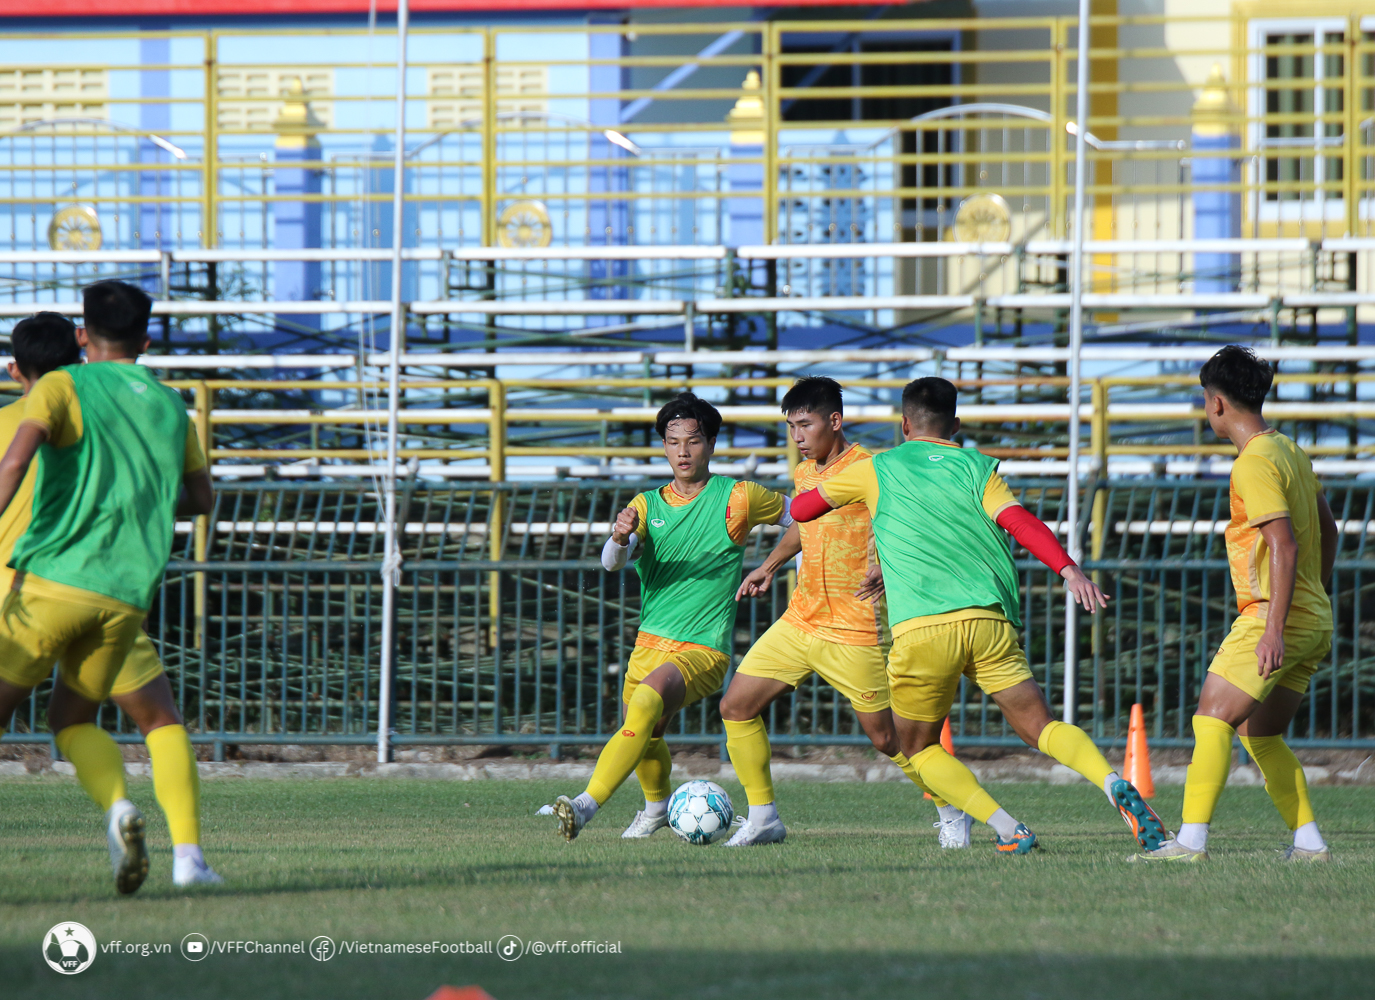 Theo chia sẻ trước đó của tiền vệ Đinh Xuân Tiến, ban huấn luyện  U23 Việt Nam đã có những phân tích chiến thuật về 2 đối thủ của bảng đấu và yêu cầu toàn đội thi đấu đúng theo chiến thuật đã đề ra.